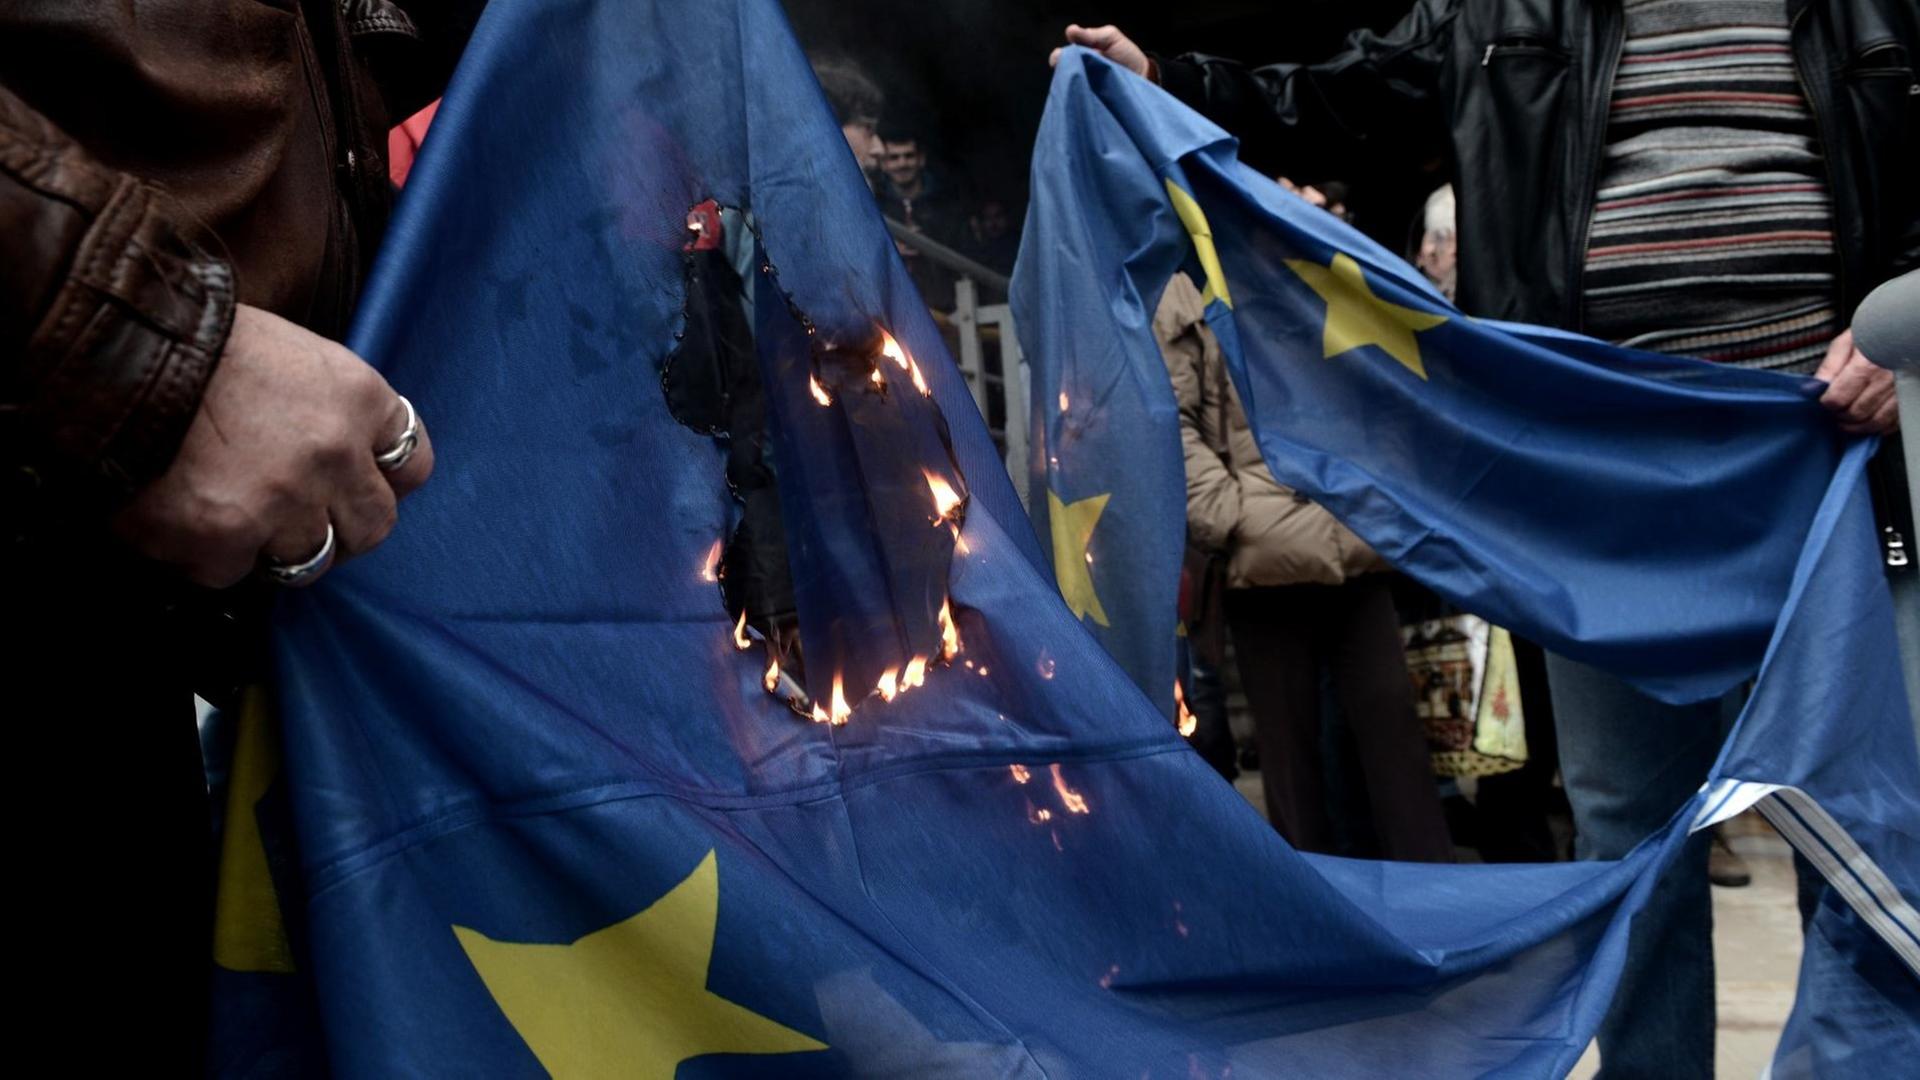 Demonstranten verbrennen eine EU-Flagge, als sie am 10. Januar 2018 vor dem Gerichtsgebäude in Thessaloniki gegen Versteigerungen von Immobilien protestieren.